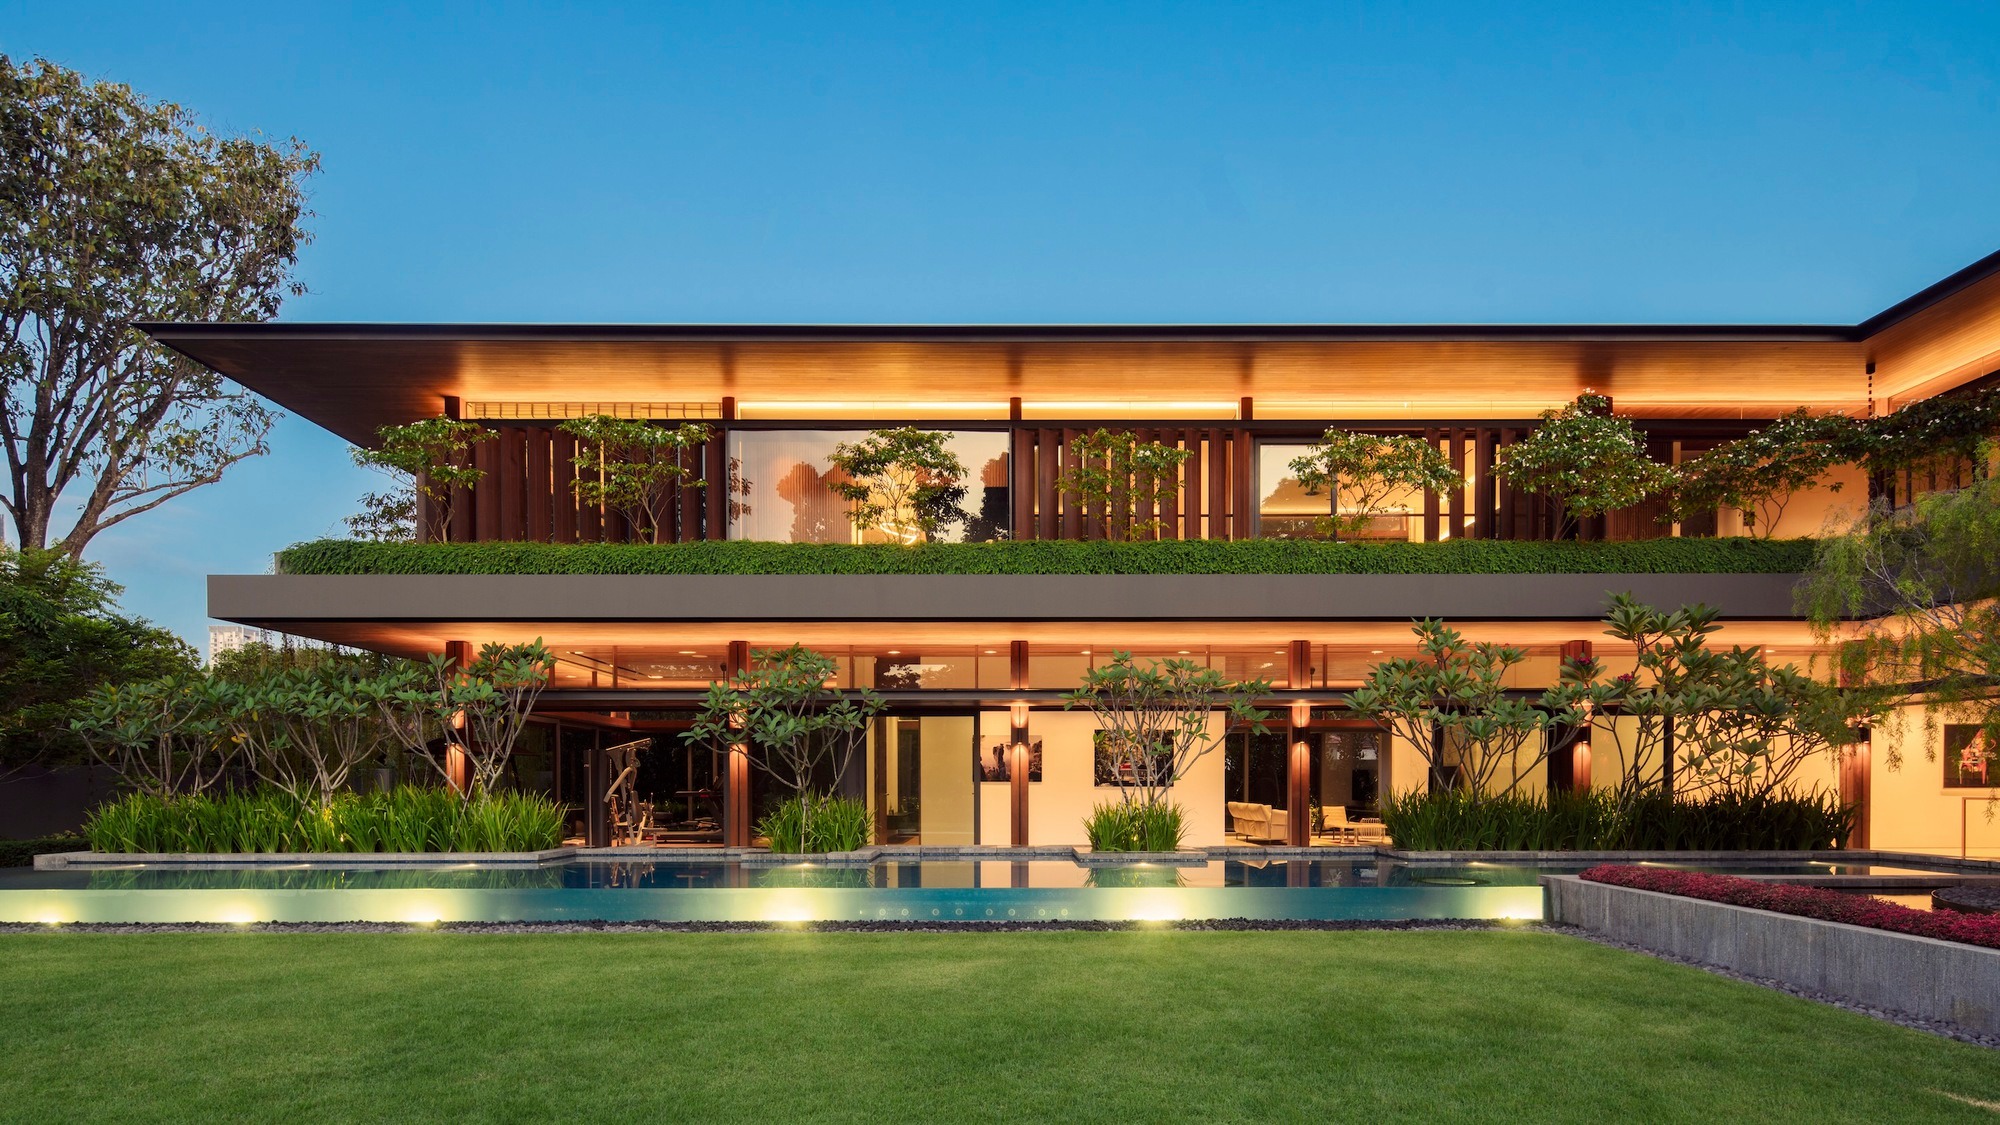 Thiết kế biệt thự phong cách Tropical nổi bật kiểu dáng chữ L độc đáo, tích hợp hồ bơi ngay trước sân nhà